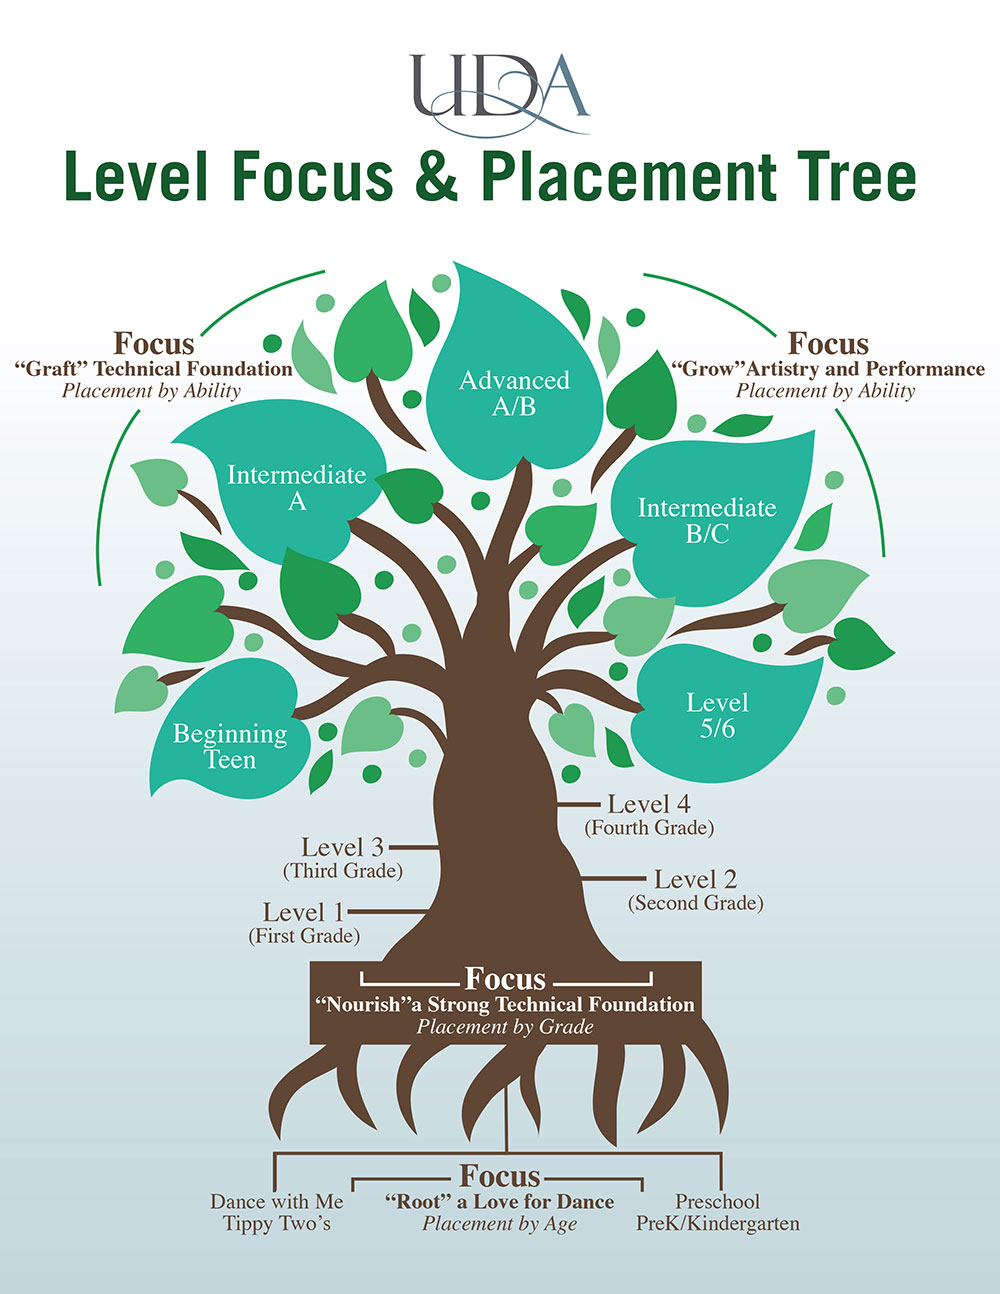 UDA Level Focus & Placement Tree